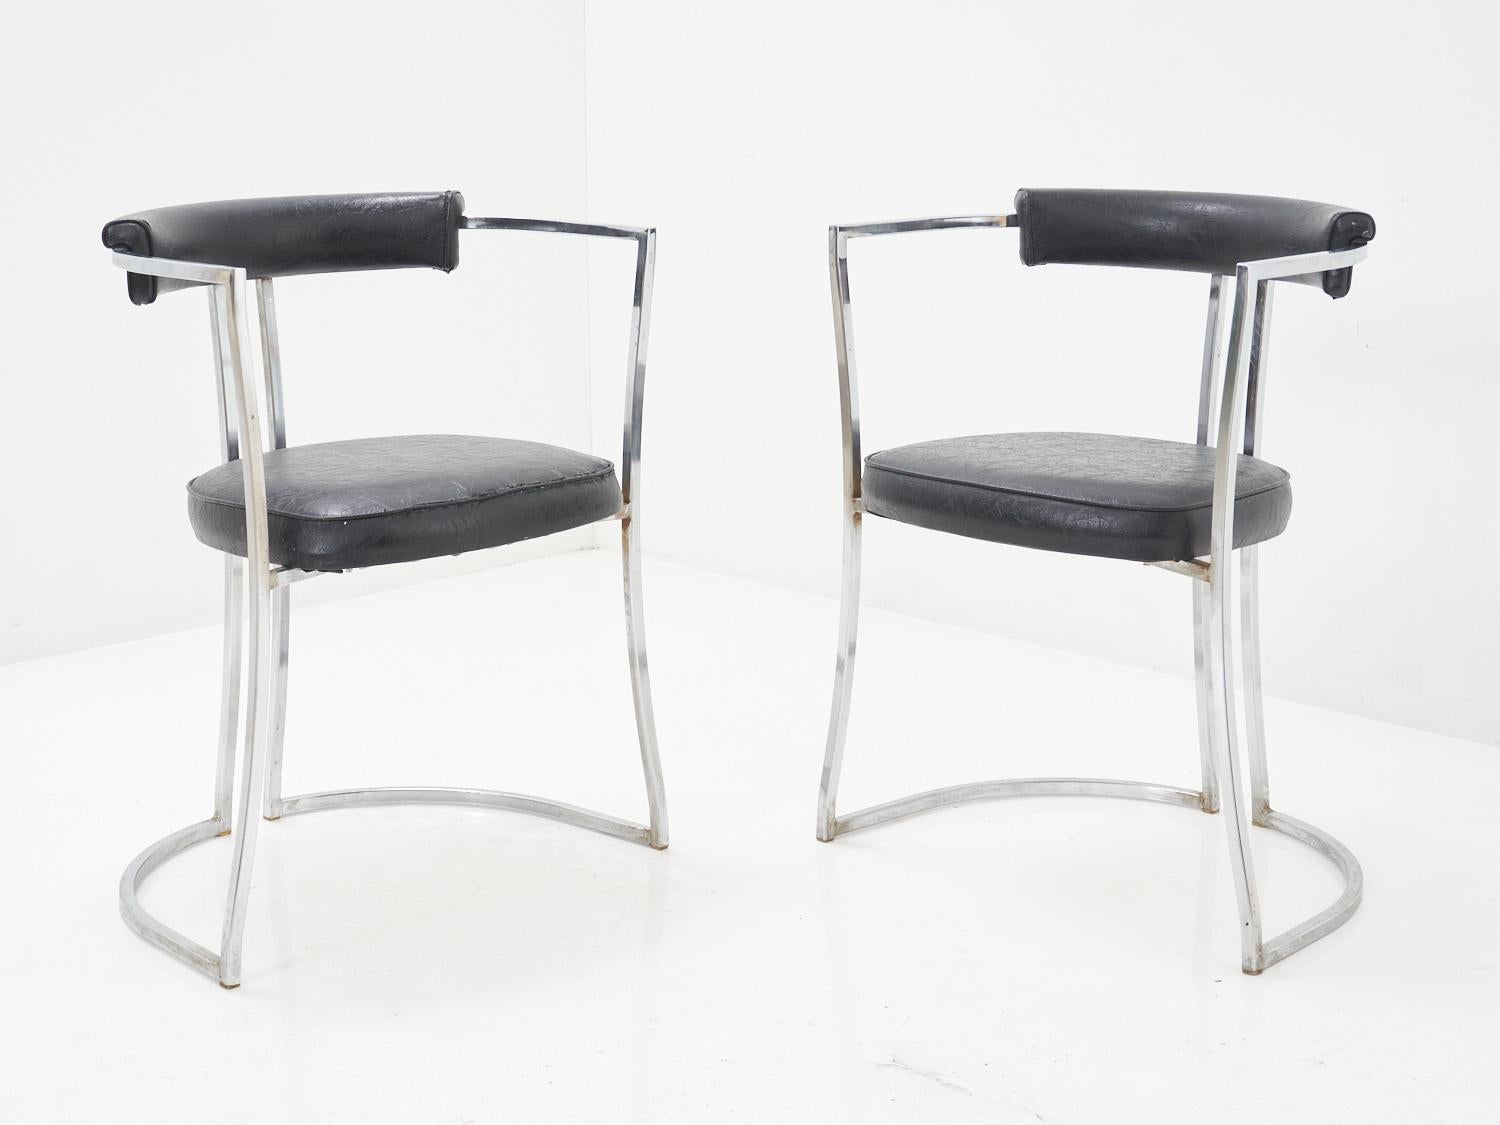 Nehmen Sie Platz in diesem Sculptural Chrome Chair und lassen Sie sich in die funky 70er Jahre zurückversetzen - Groovy Vibes inklusive.

- 28,5 